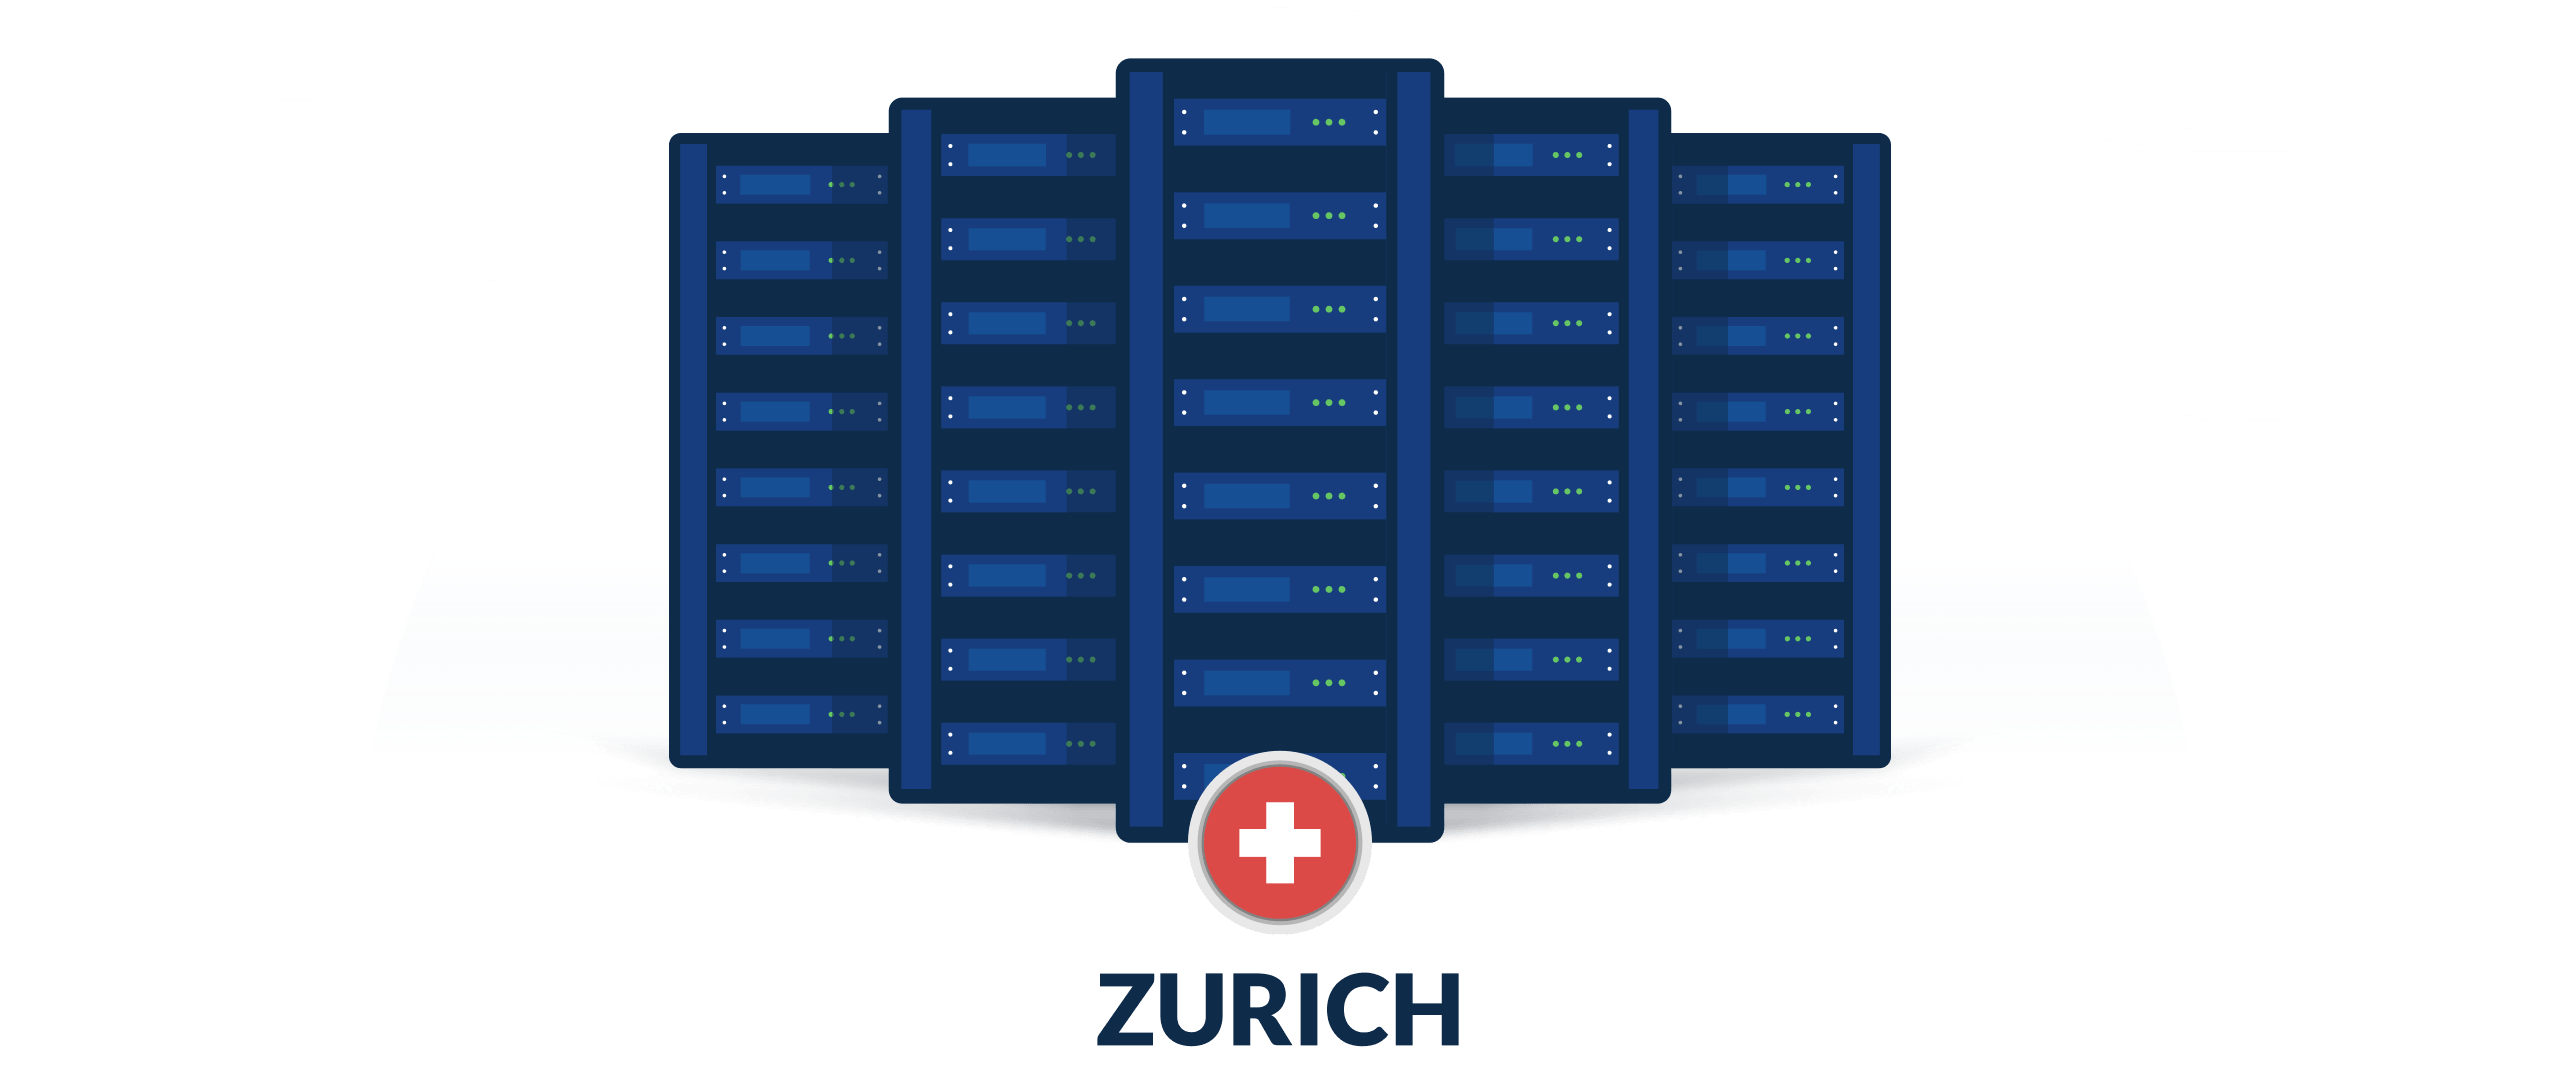 VPN servers in Zurich, Switzerland